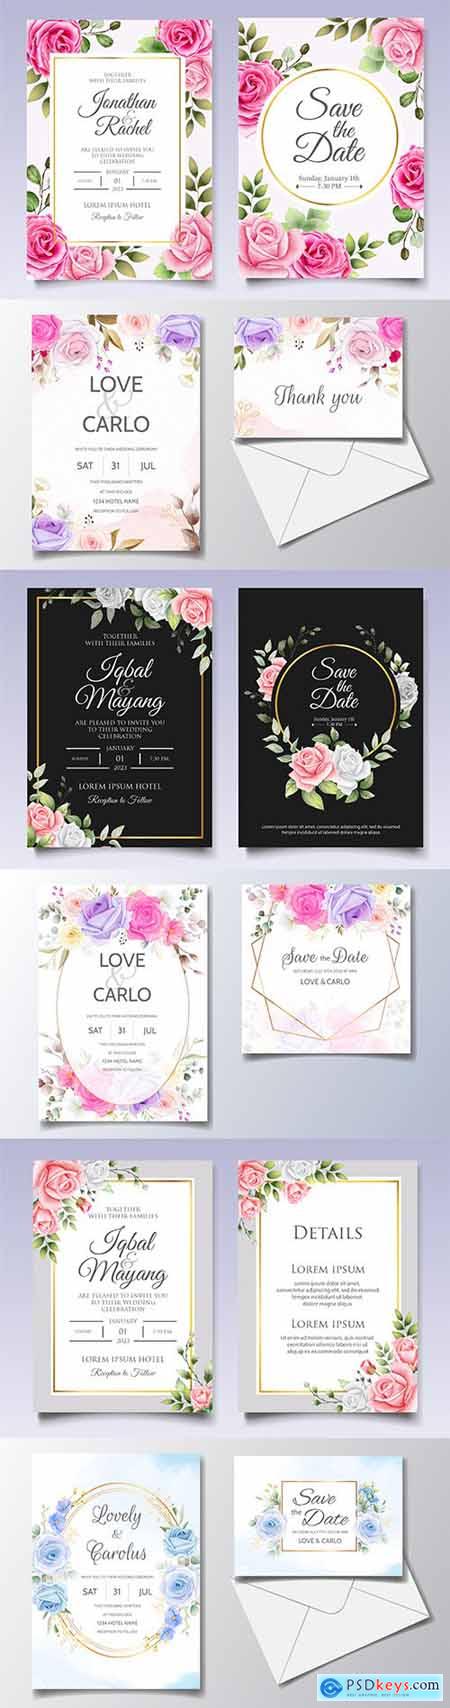 Elegant wedding invitation template flowers and leaves 3